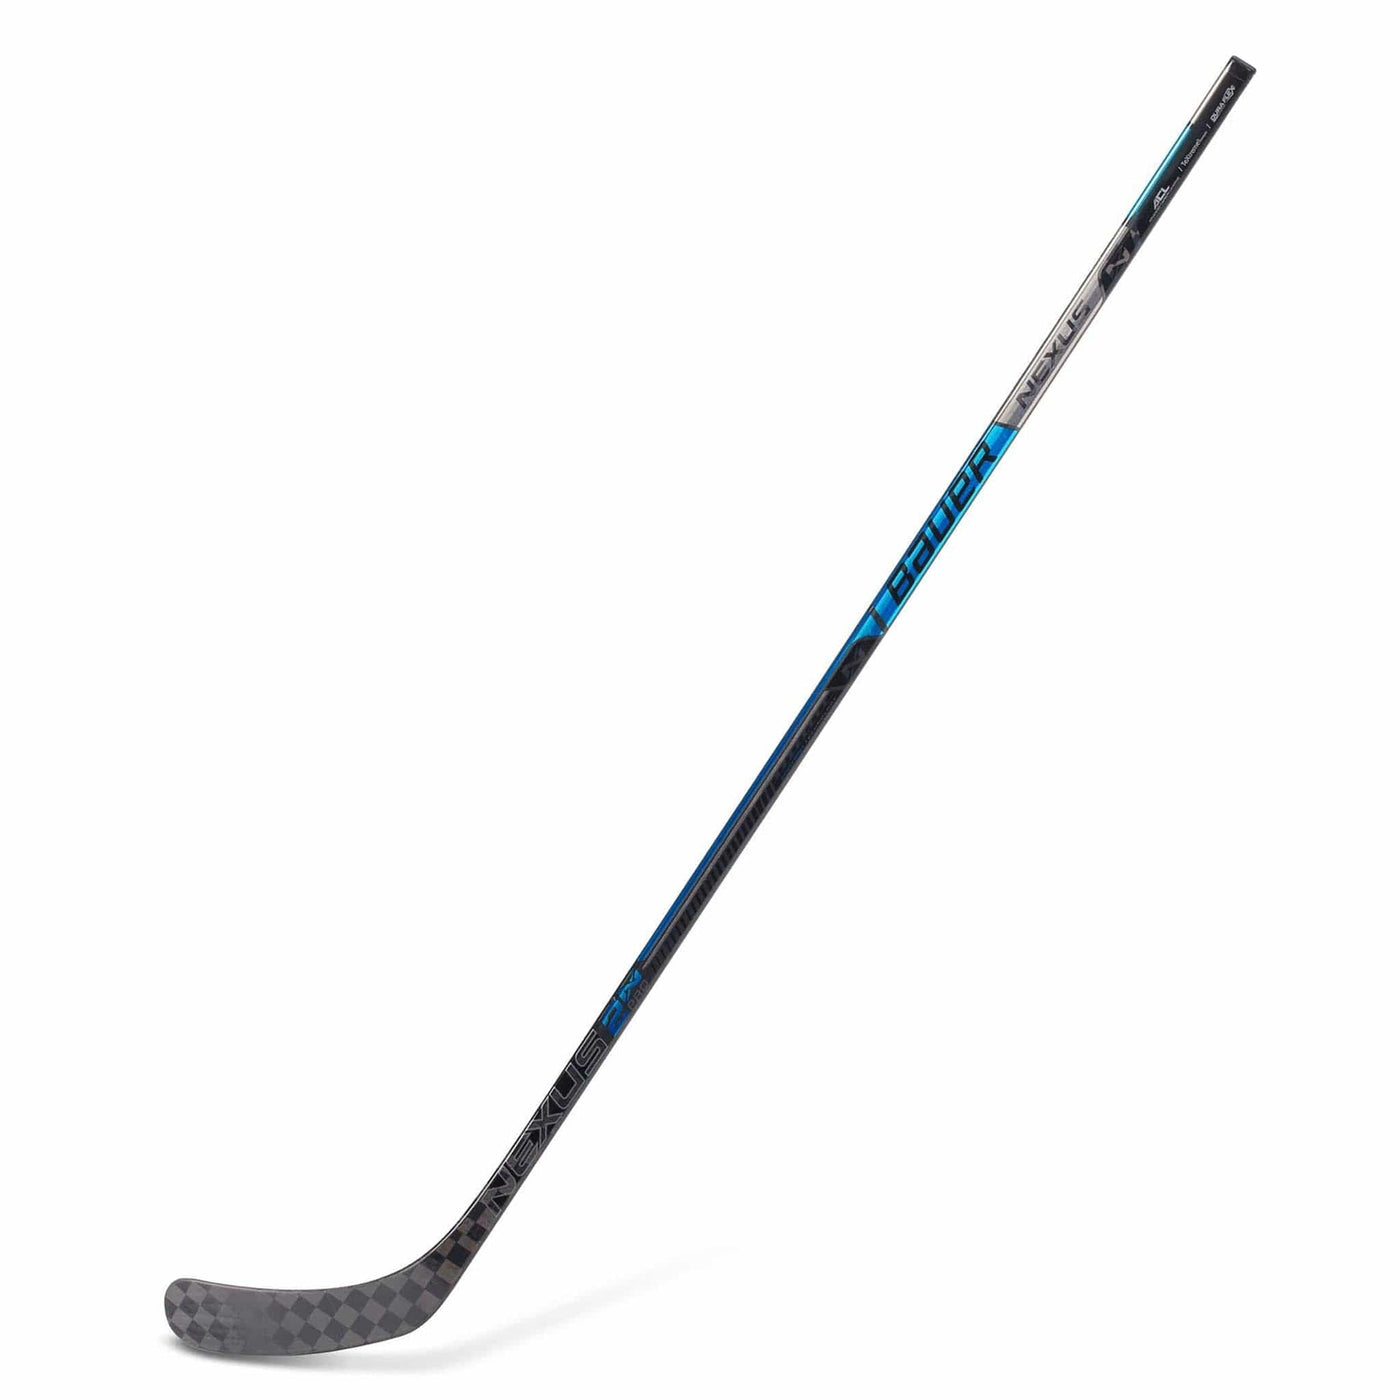 Bauer Nexus 2N Pro Senior Hockey Stick